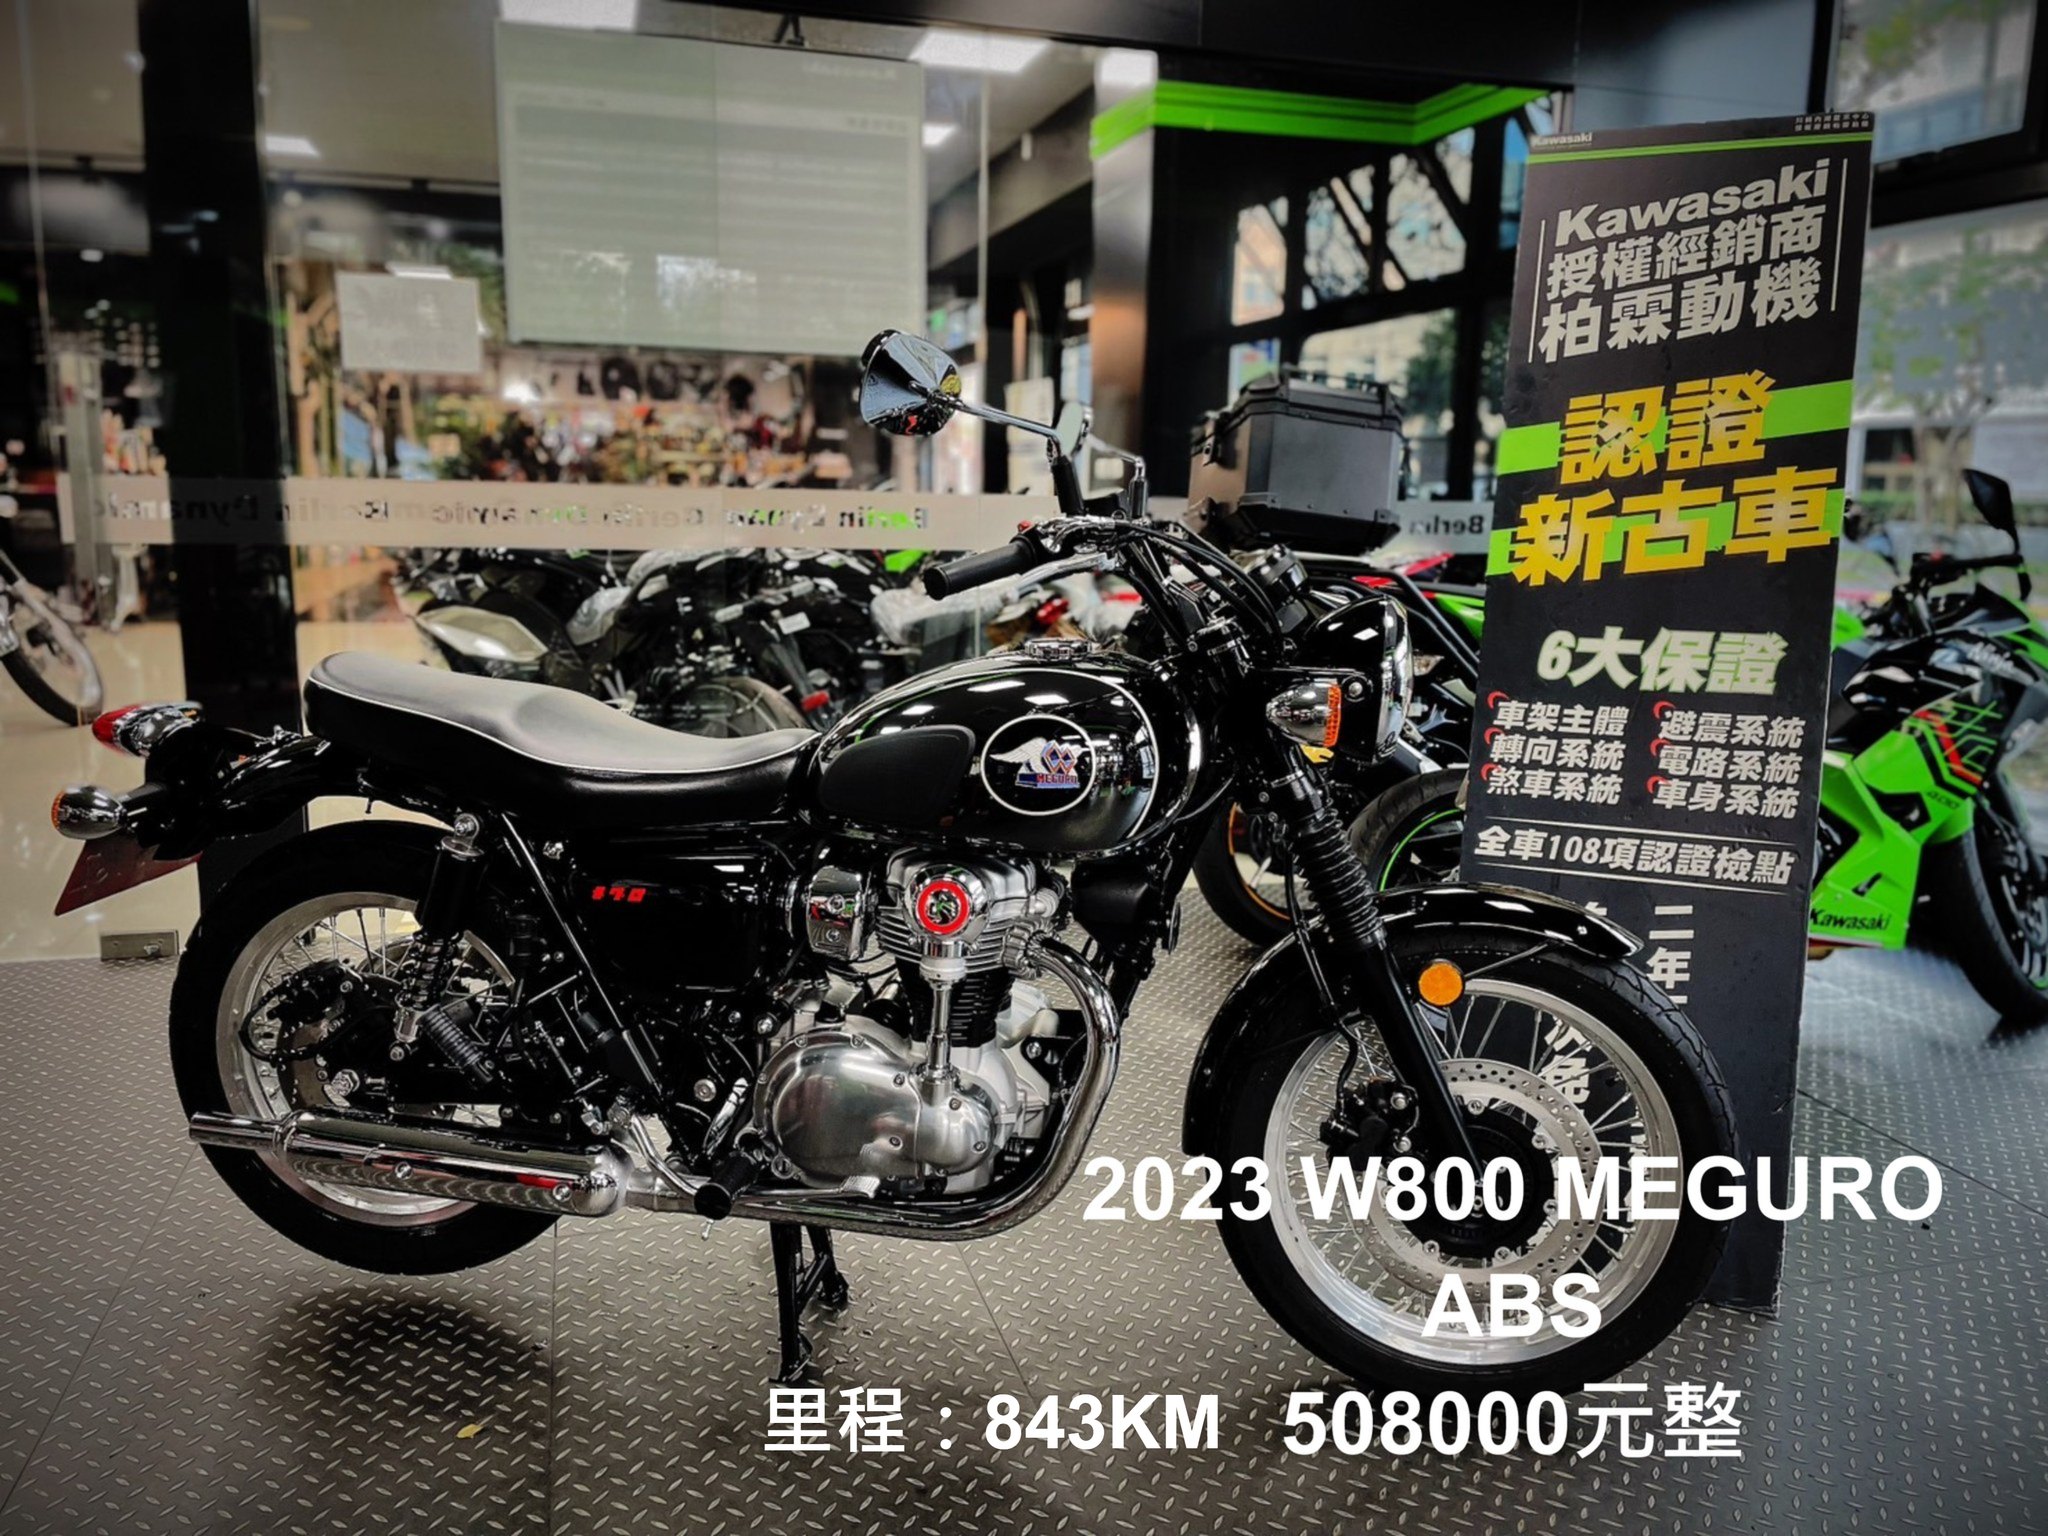 KAWASAKI W800 - 中古/二手車出售中 Kawasaki (川崎 )W800 MEGURO ABS 認證中古車 | 柏霖動機Kawasak職人-阿弘